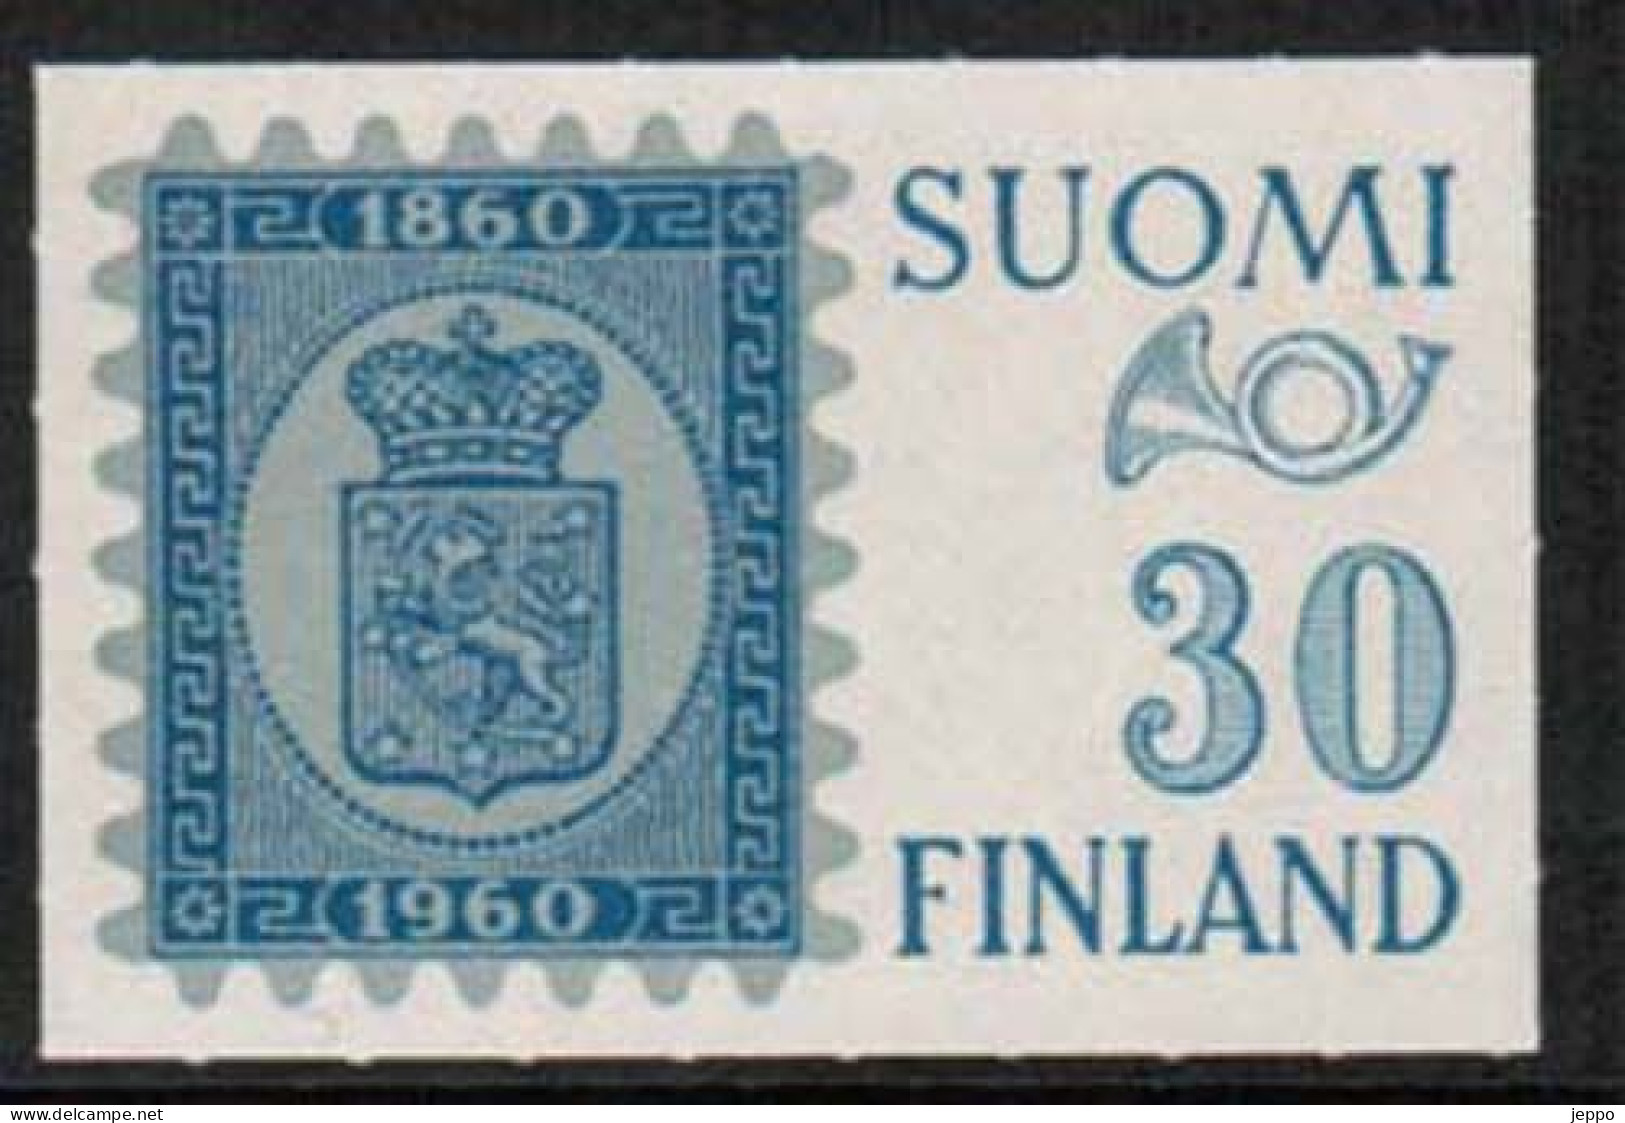 1960 Finland Exhibition Stamp  **. - Esposizioni Filateliche